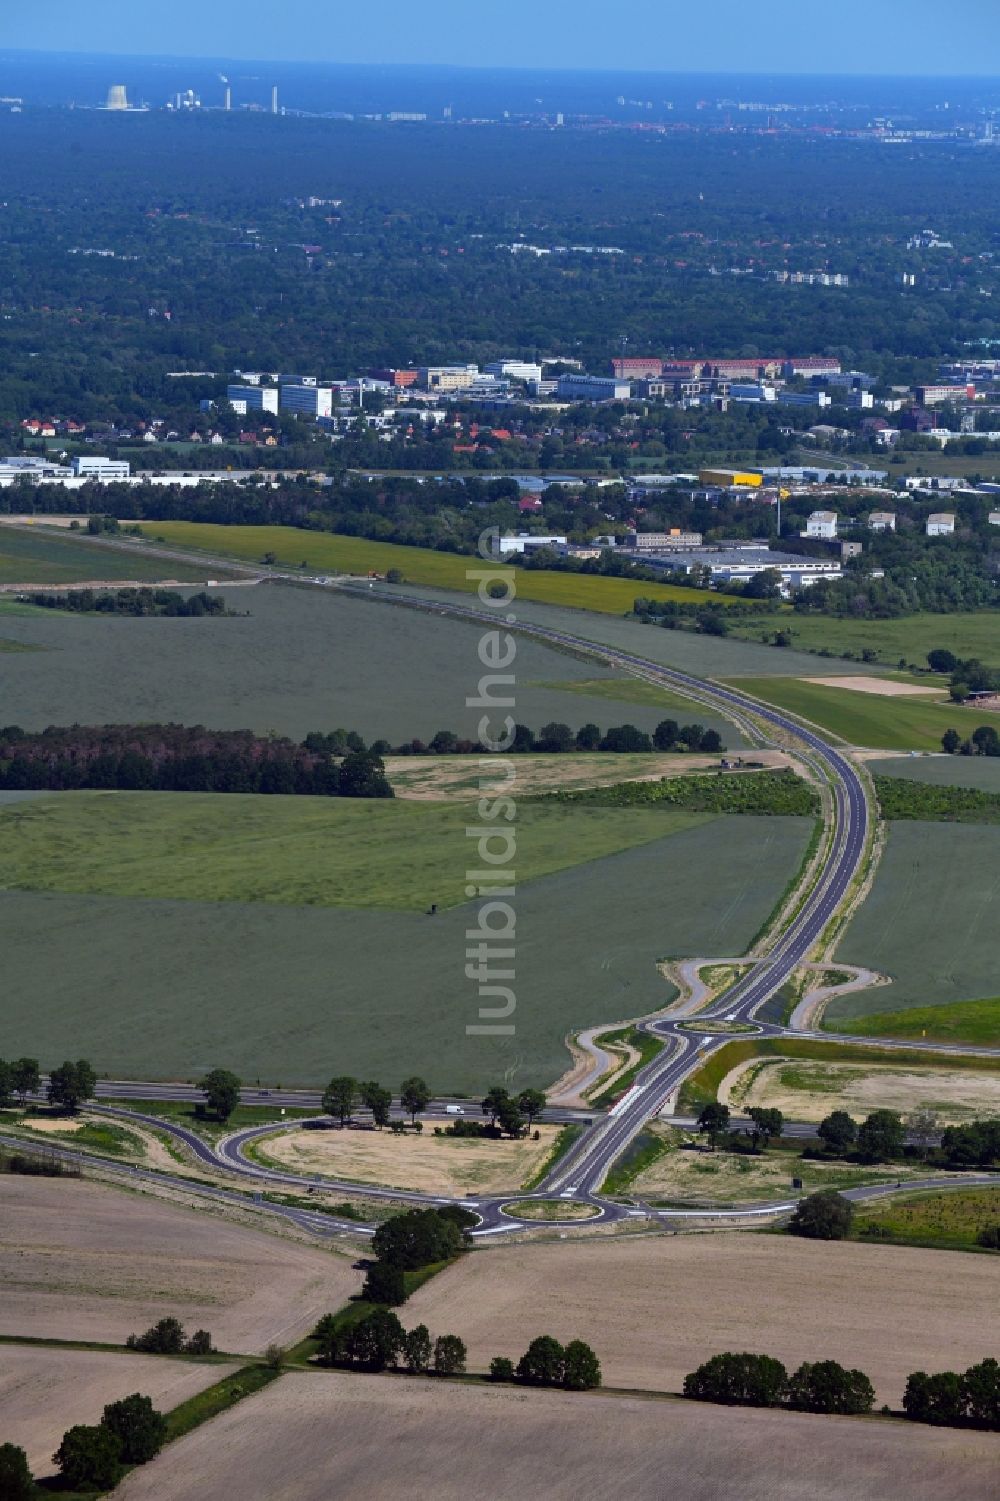 Luftbild Stahnsdorf - Ausbau der Ortsumgehung im Straßenverlauf der Landesstraße L77n im Ortsteil Güterfelde in Stahnsdorf im Bundesland Brandenburg, Deutschland